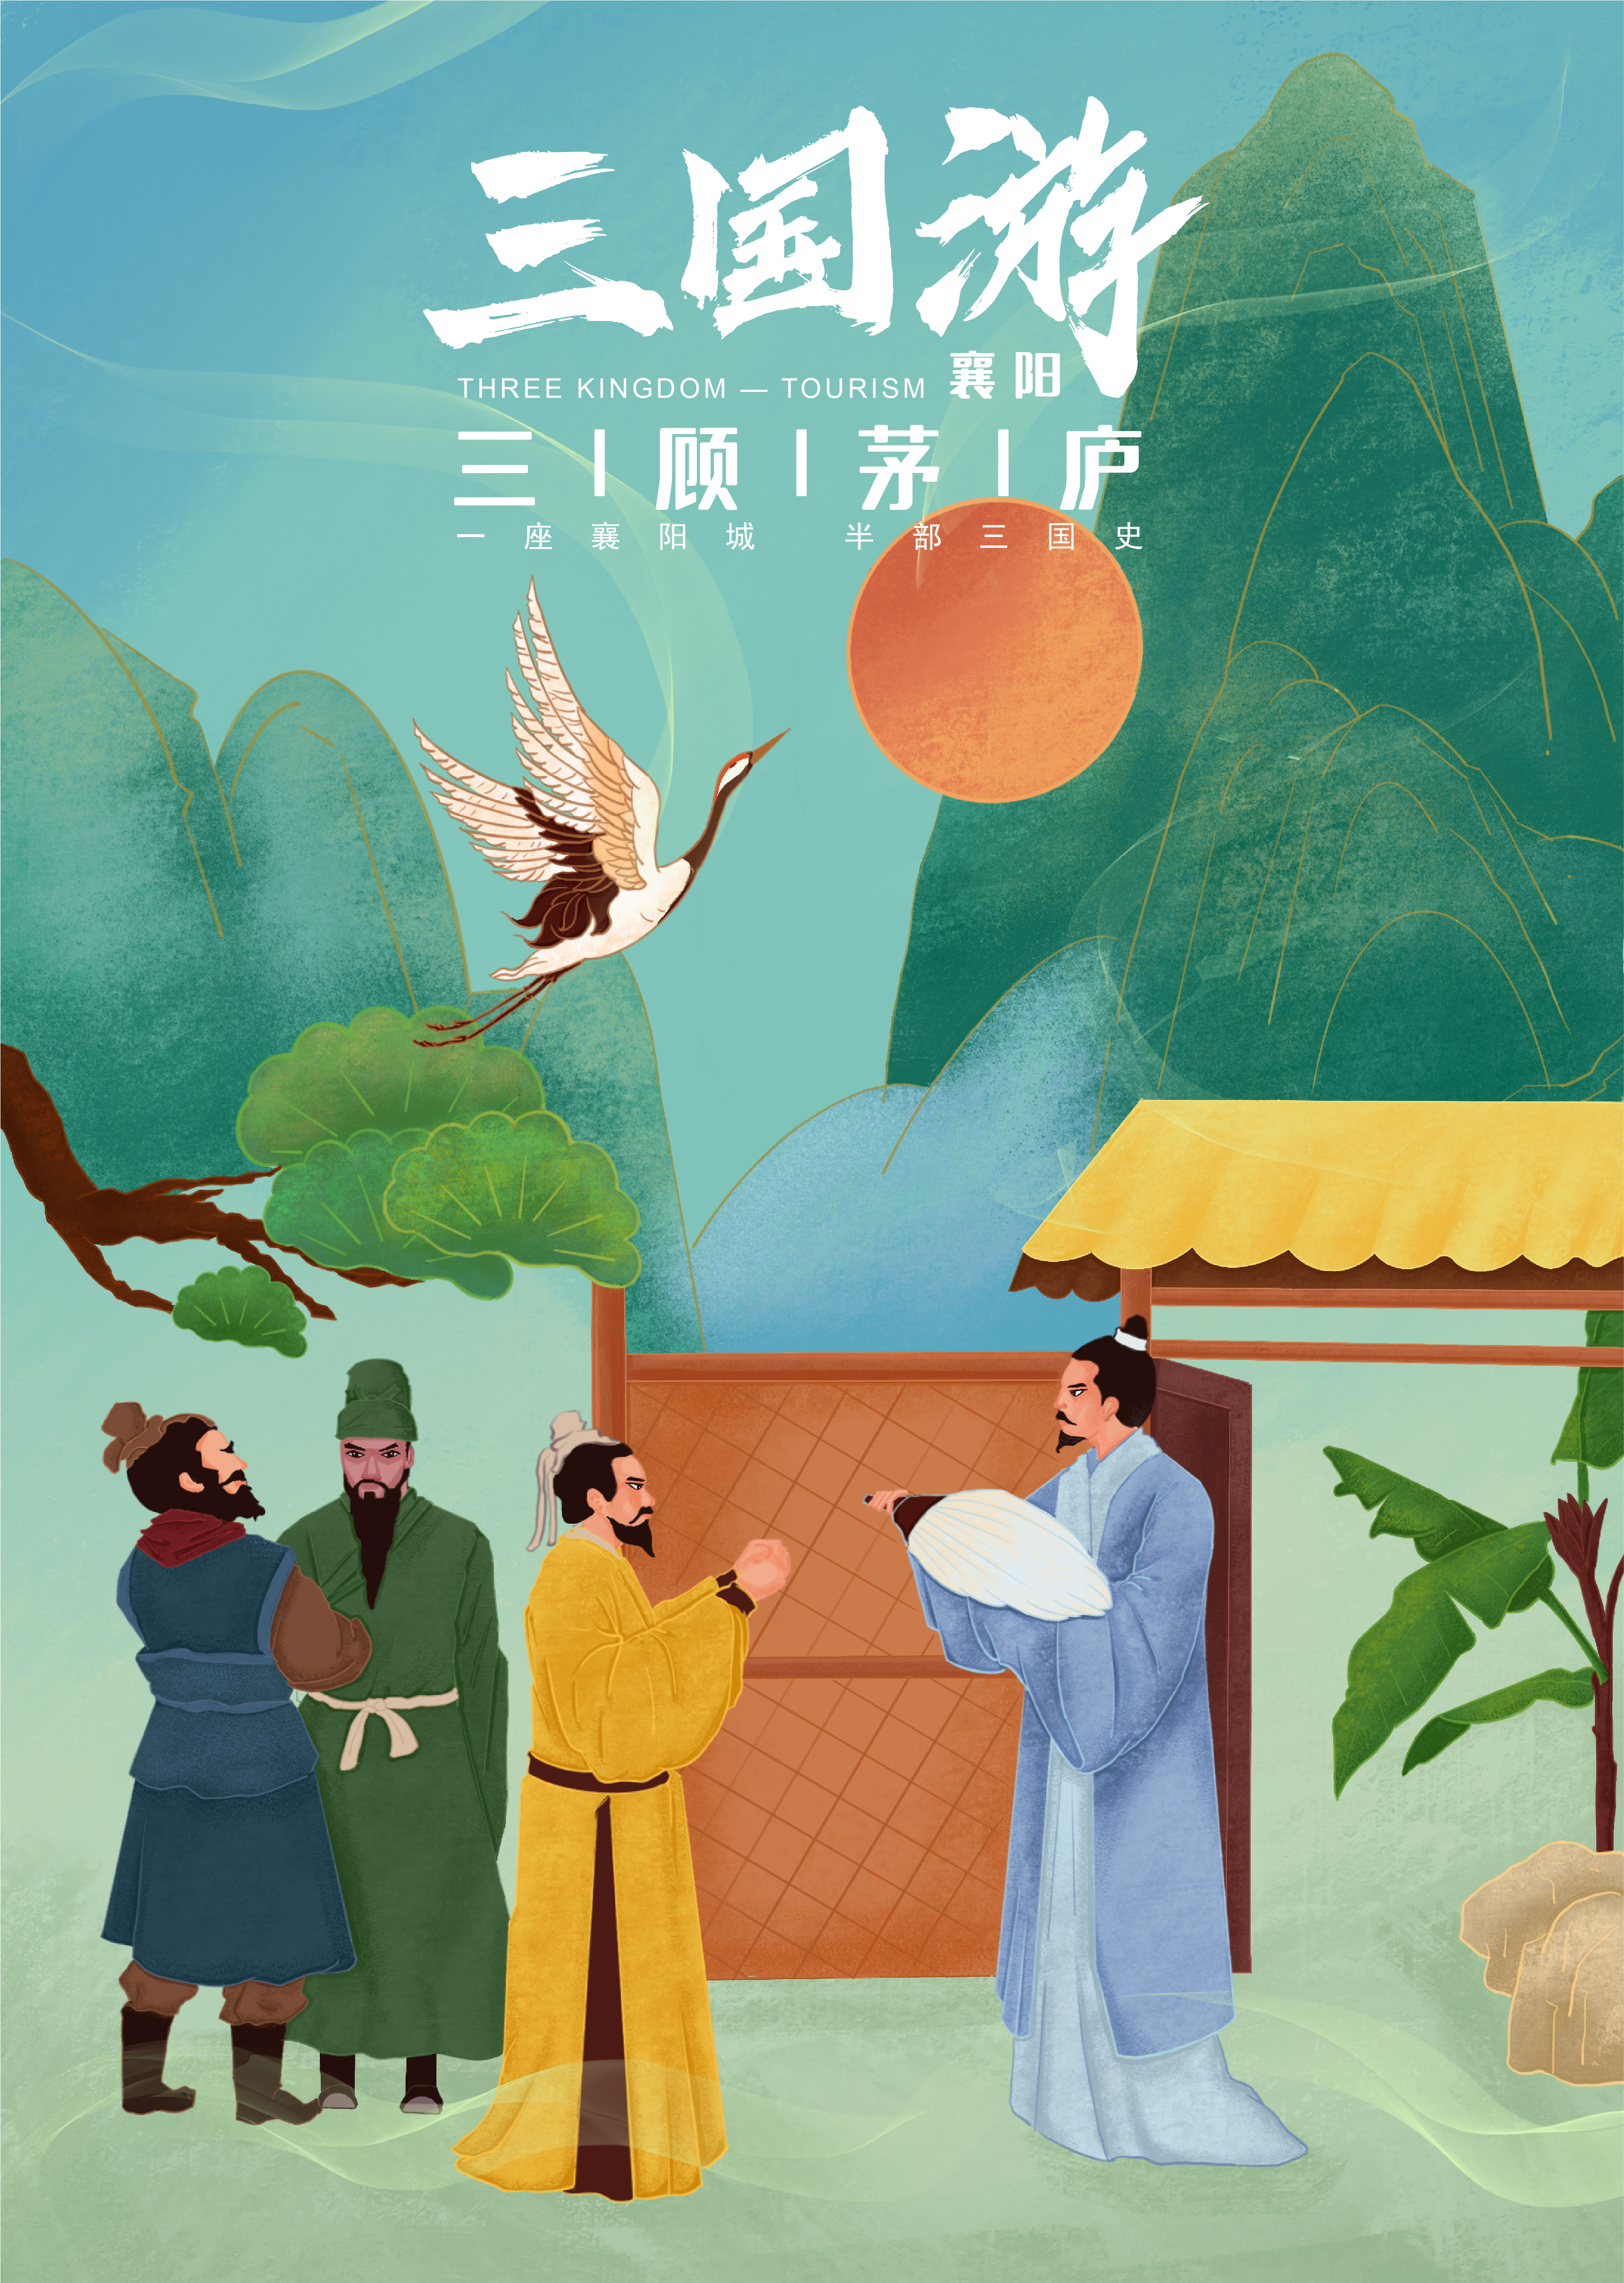 三国游襄阳三国文化旅游攻略设计